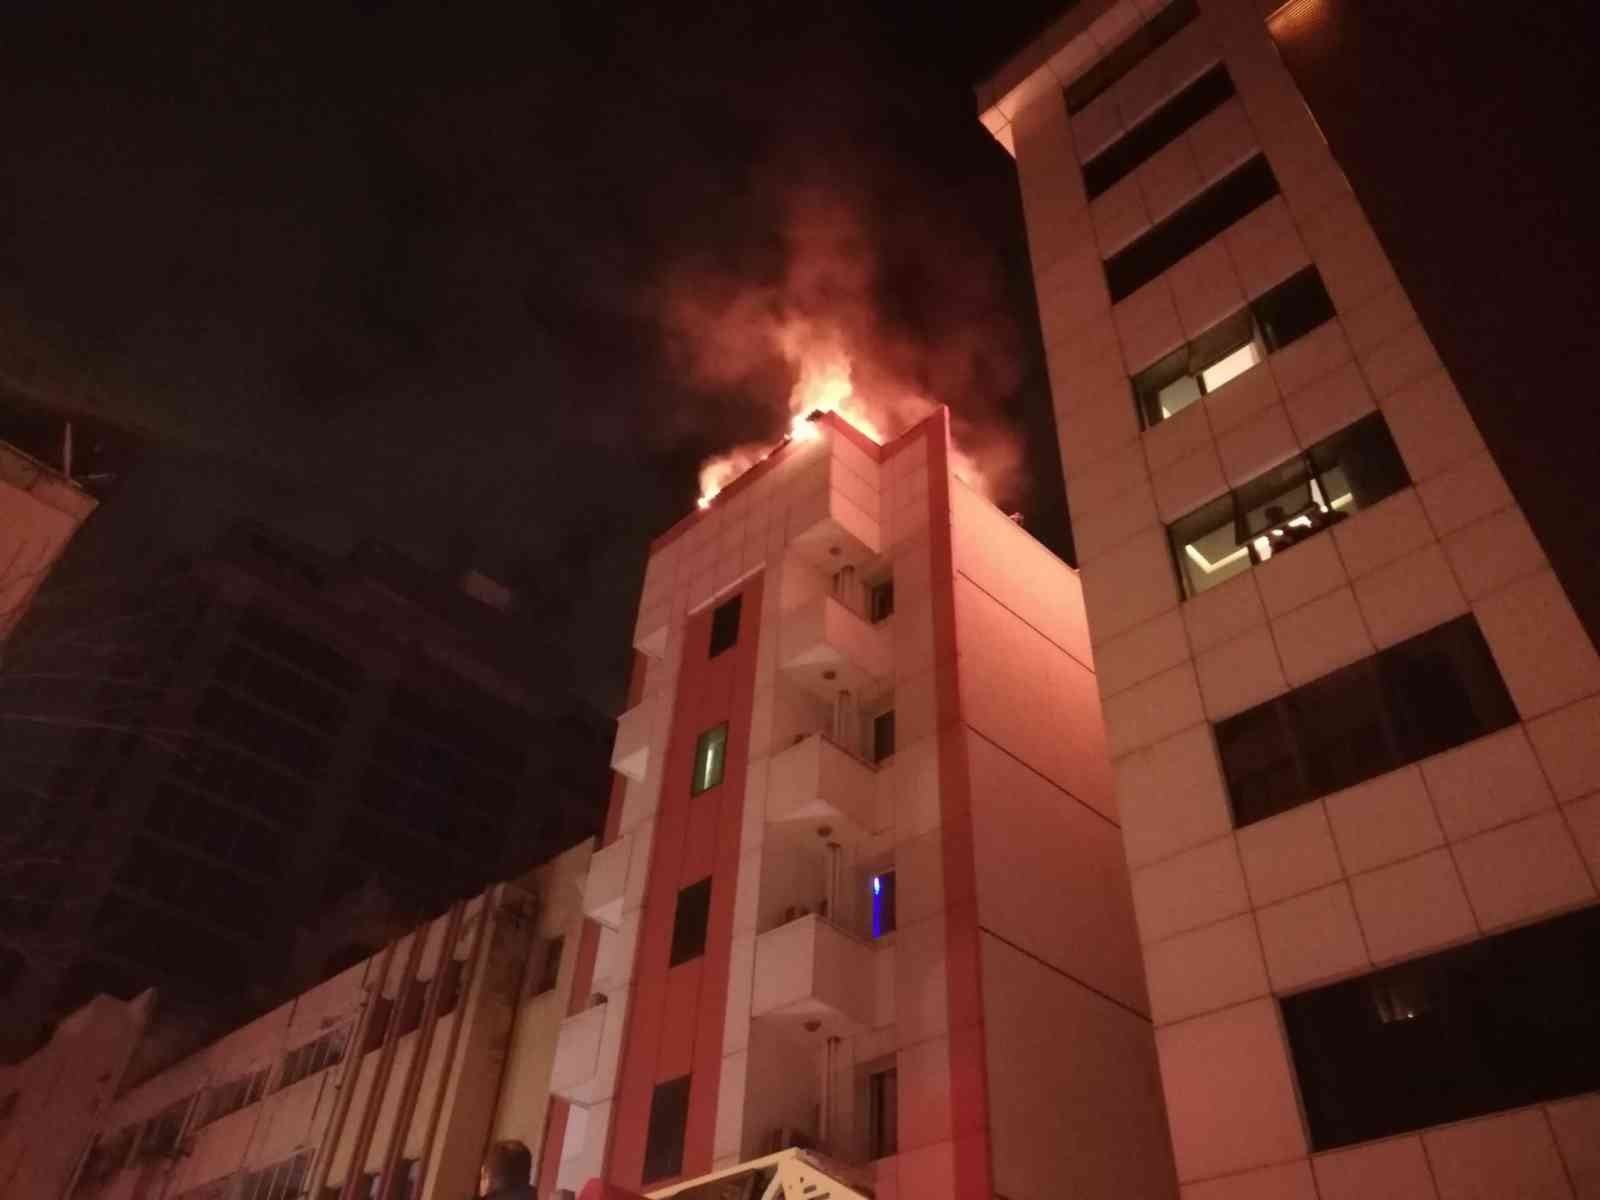 İzmir’de 5 katlı otelde yangın paniği, müşteriler tahliye edildi #izmir